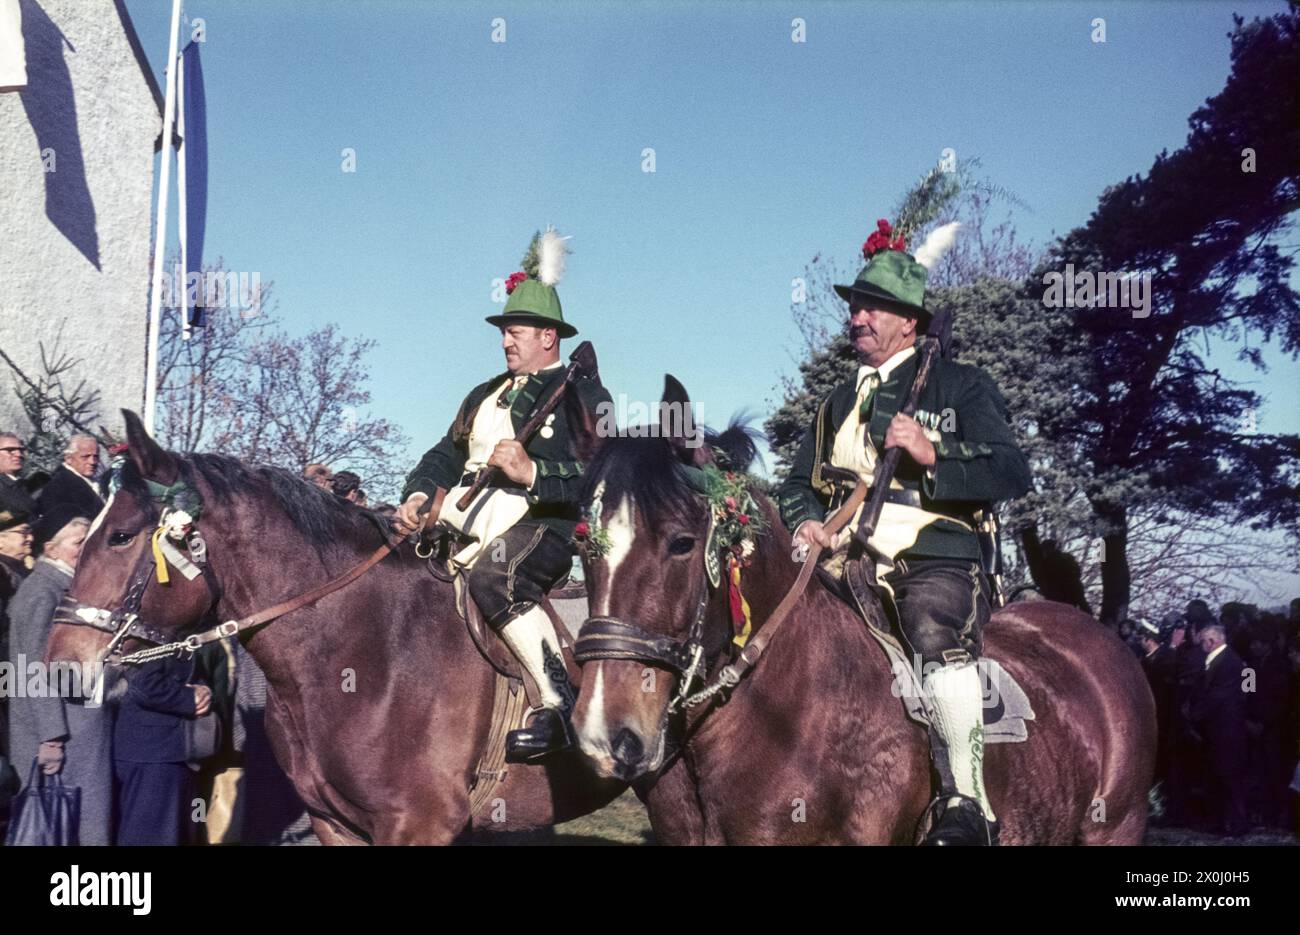 Am 6. November fahren zwei Reiter in Tracht mit Hüten und Schlümpfen auf dem Tölzer Leonhardi. Im Hintergrund sieht man Zuschauer. Undatiertes Foto, Mitte der 1960er Jahre. [Automatisierte Übersetzung] Stockfoto